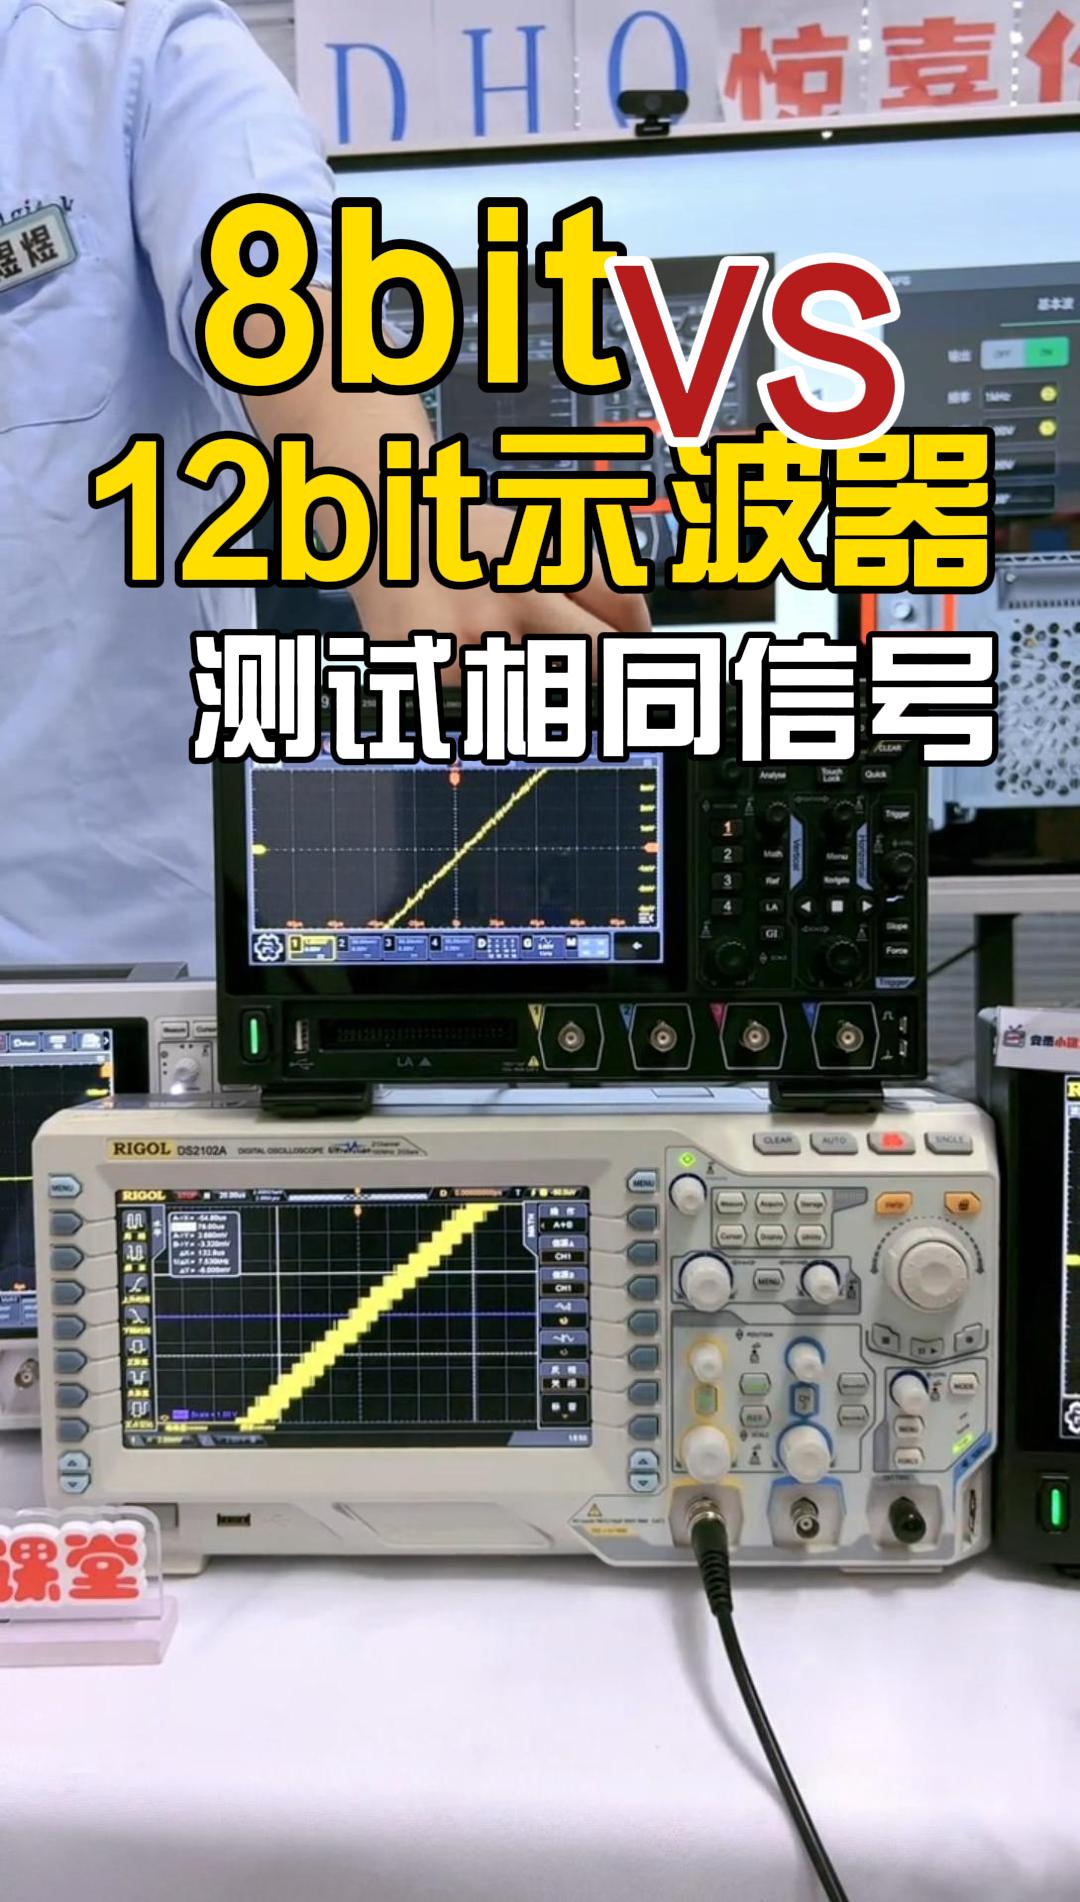 8bit示波器与12bit示波器测试相同信号究竟差在哪？#示波器 #国产示波器 #普源精电 #分辨率 #电子 